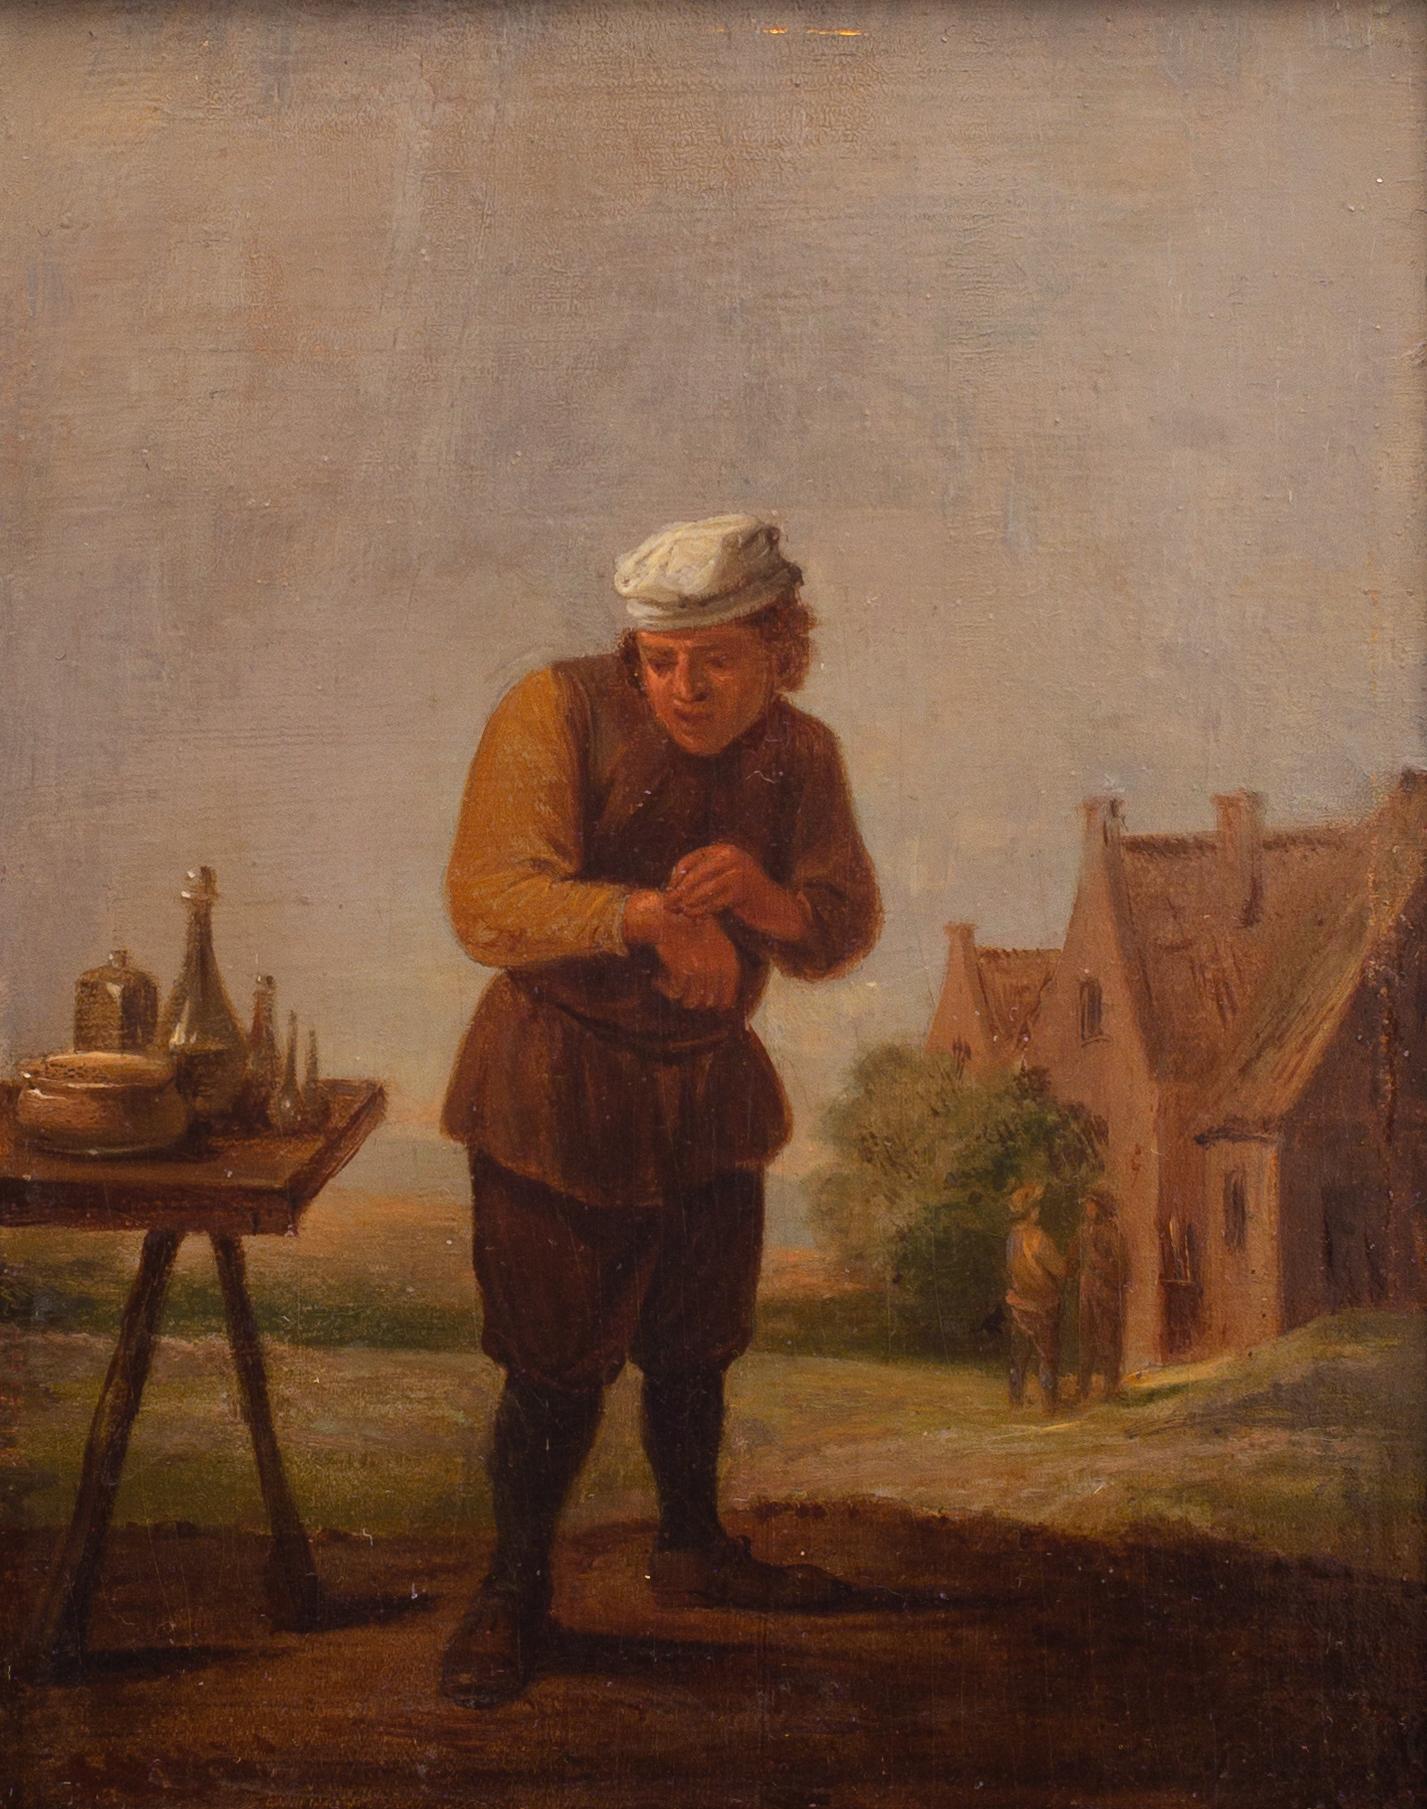 Ein Bauer, der einen Gips zurückbewahrt: Der Sinn für Berührung. Ein Follower von David Teniers – Painting von David Teniers the Younger